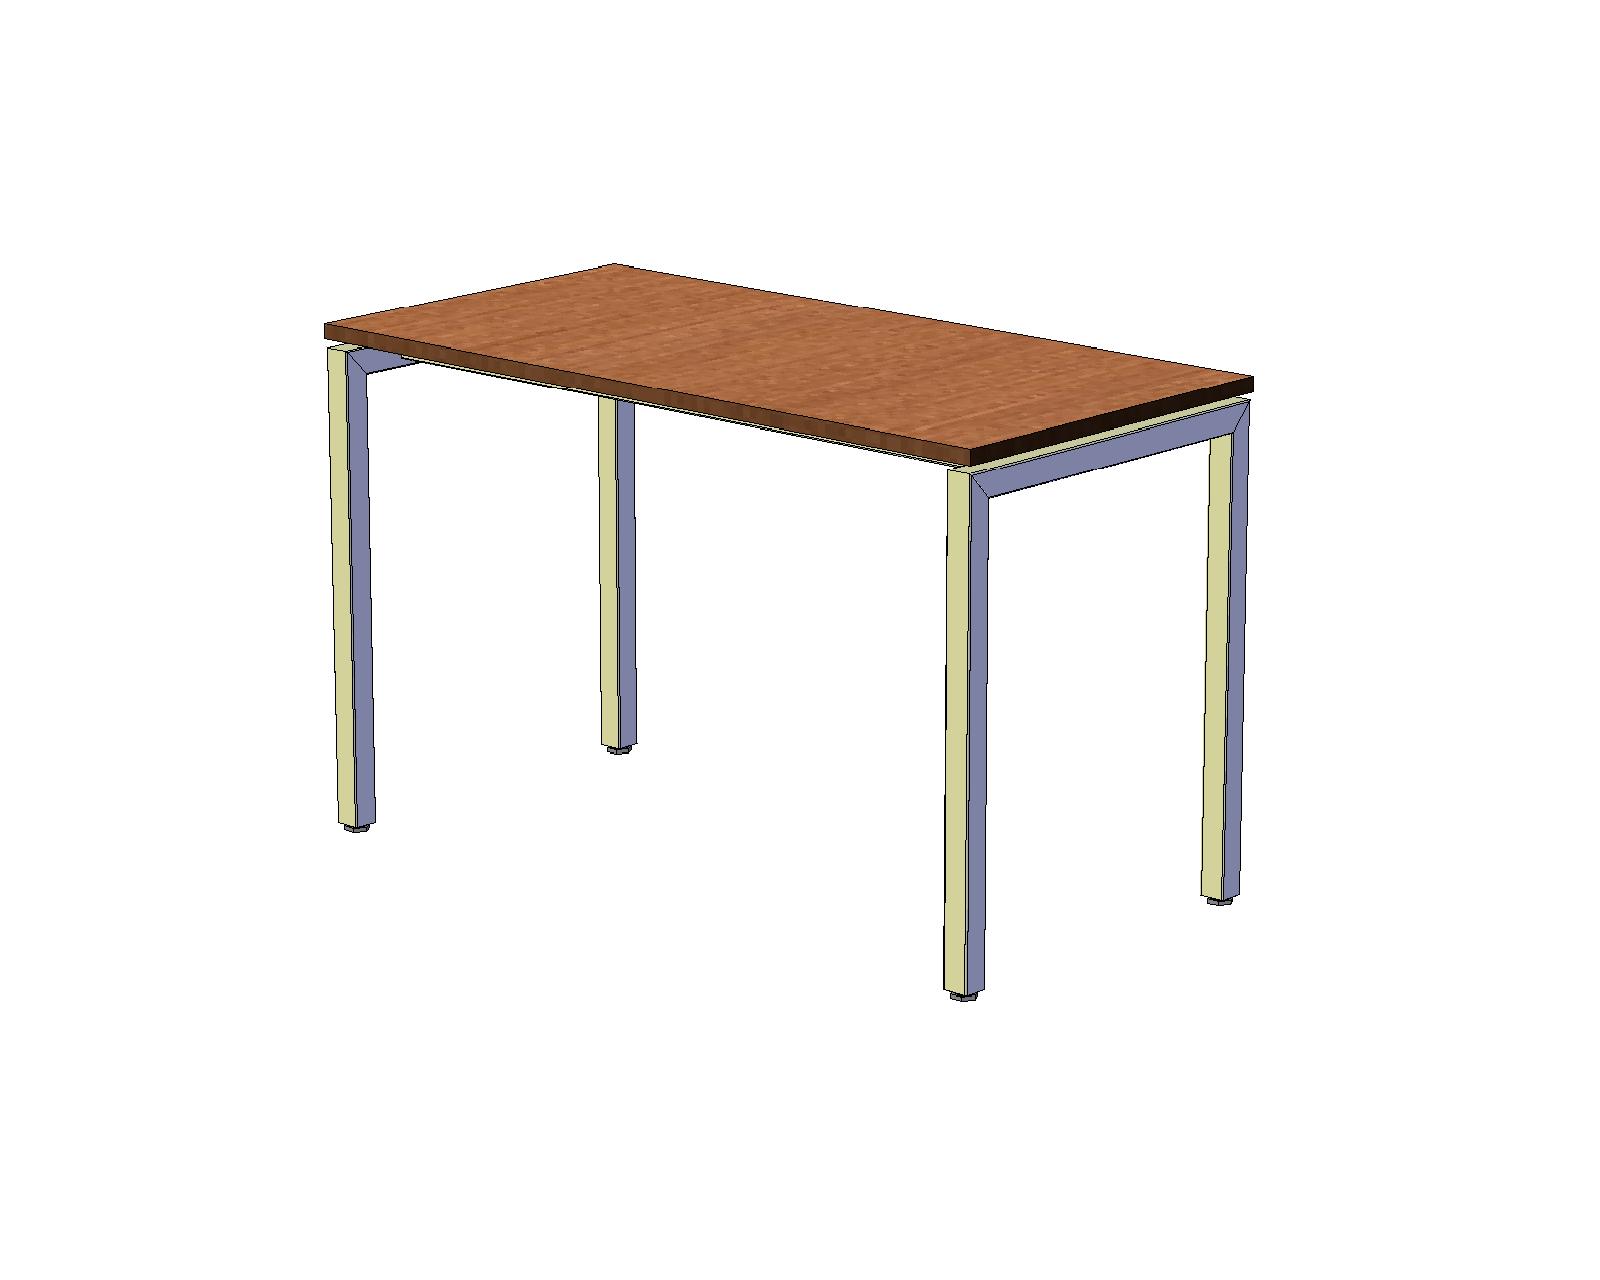 Офисный стол шир. 60 см с H-образными опорами 120 см, вишня оксфорд A16.1532/CH